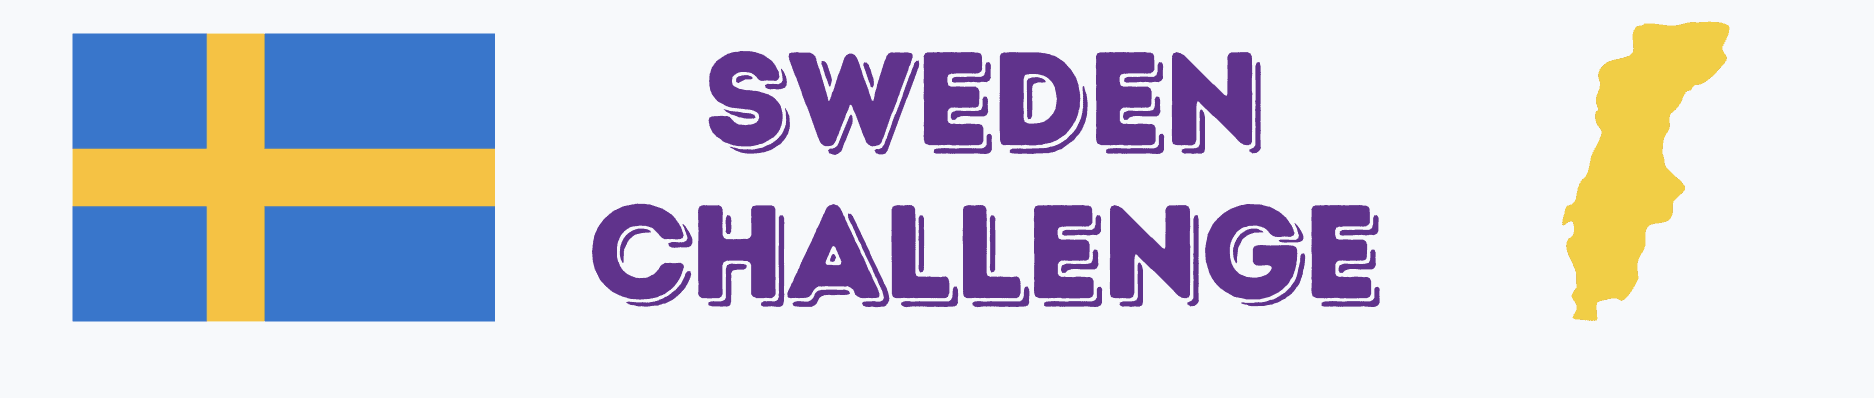 sweden-challenge-for-kids